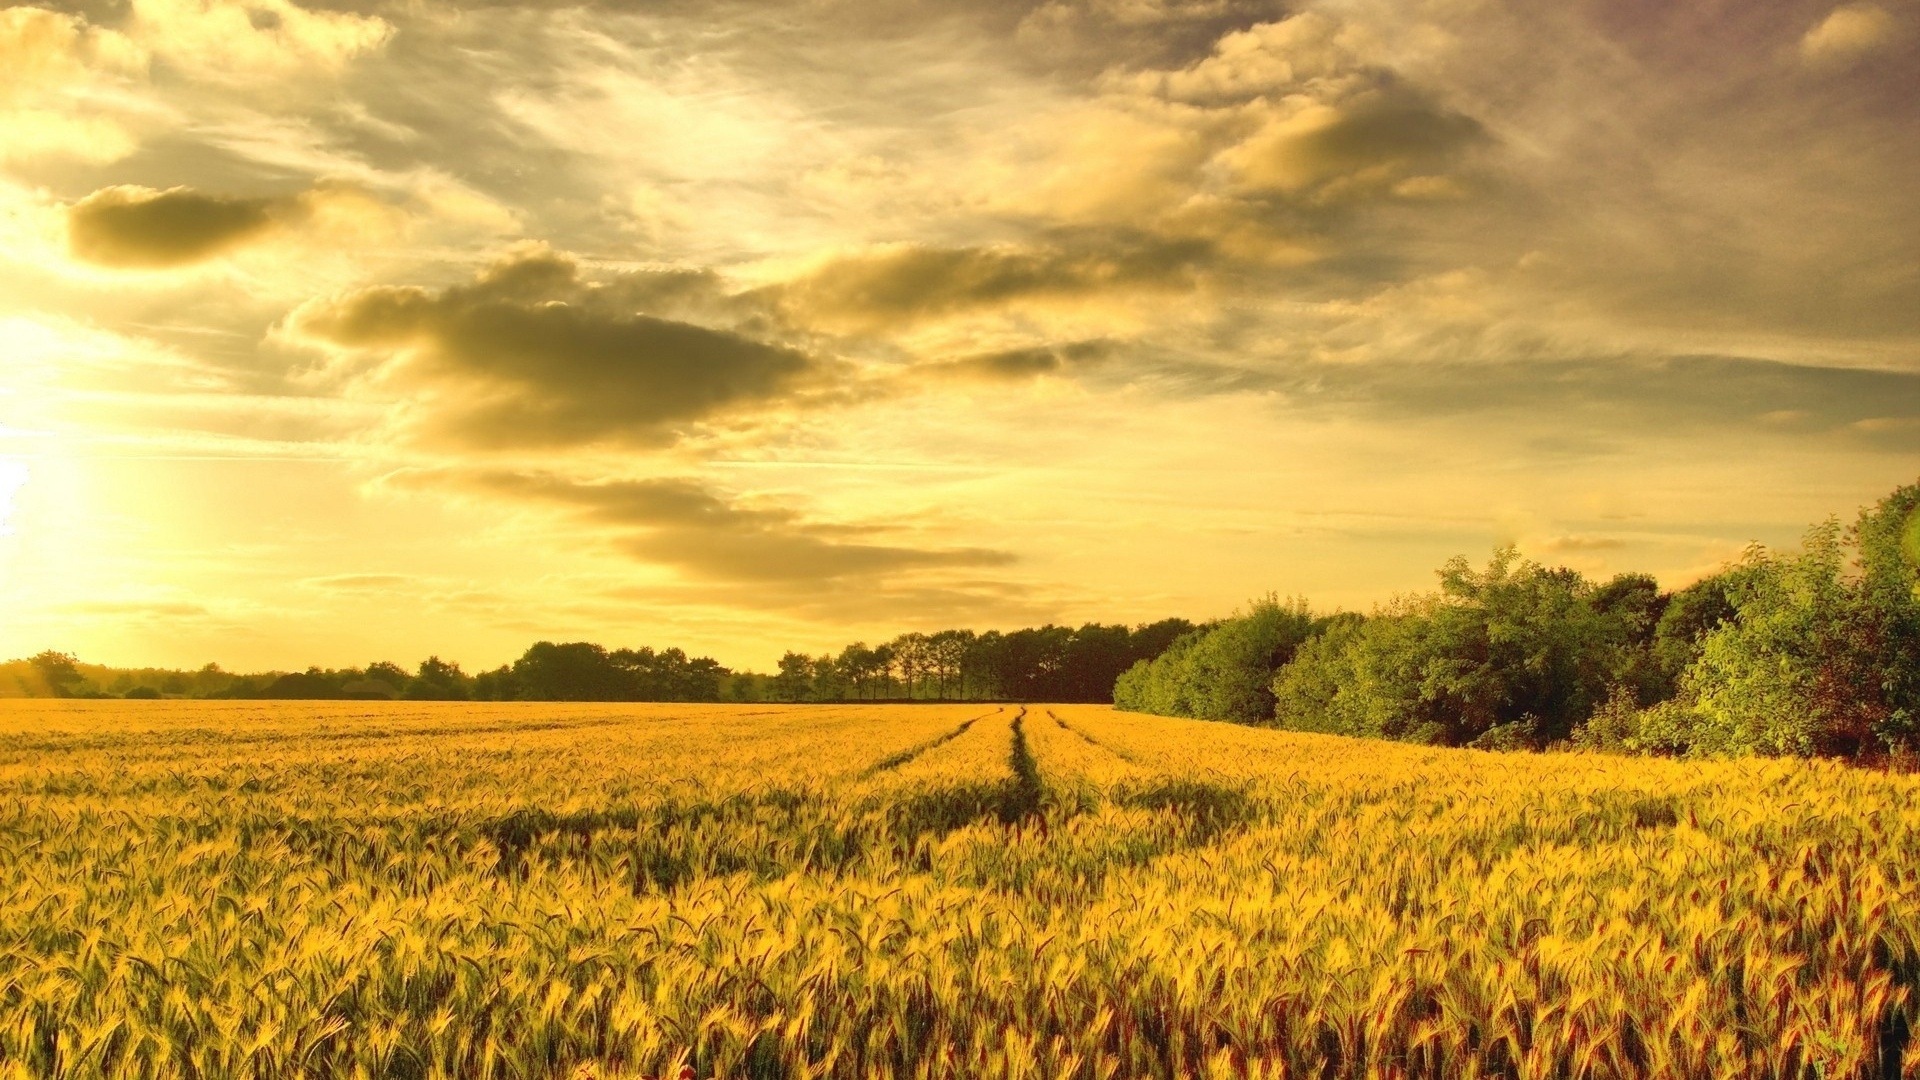 唯美夕阳下的绿色麦田风景壁纸 1P-风景图片-古装美图网